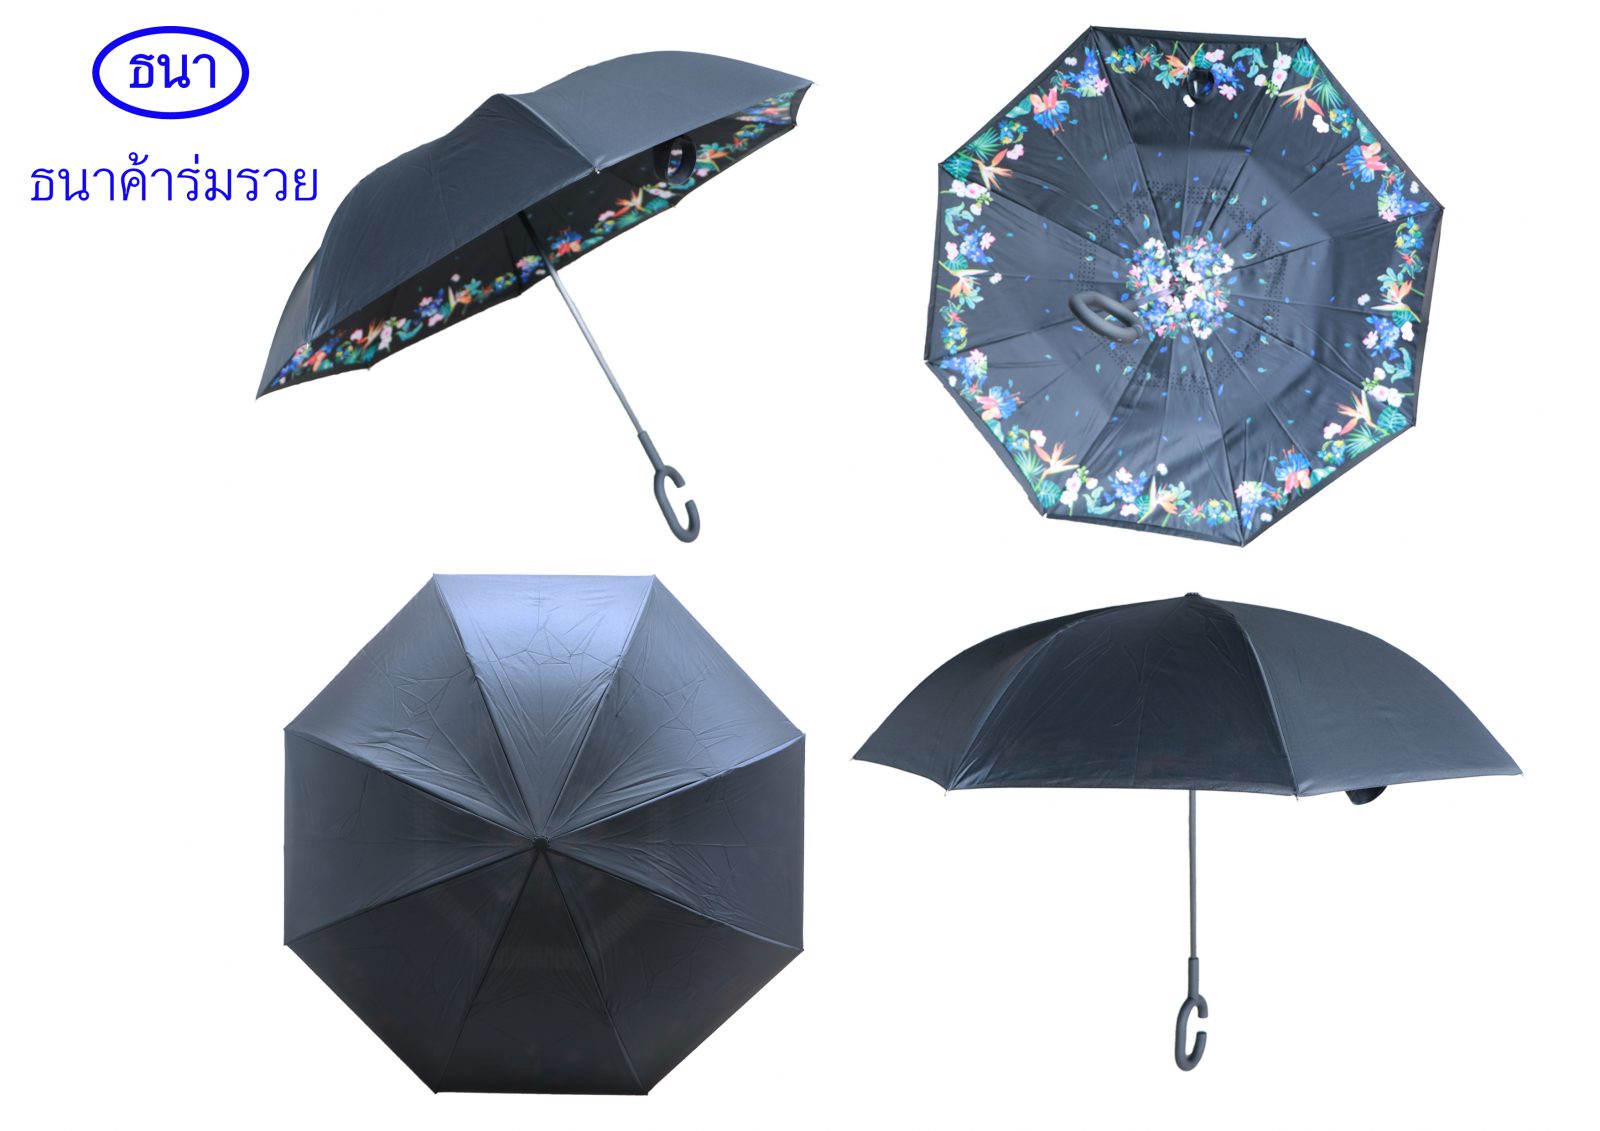 ร่มสำหรับกันฝนมีความแตกต่างกับร่มกันแดดอย่างไร 